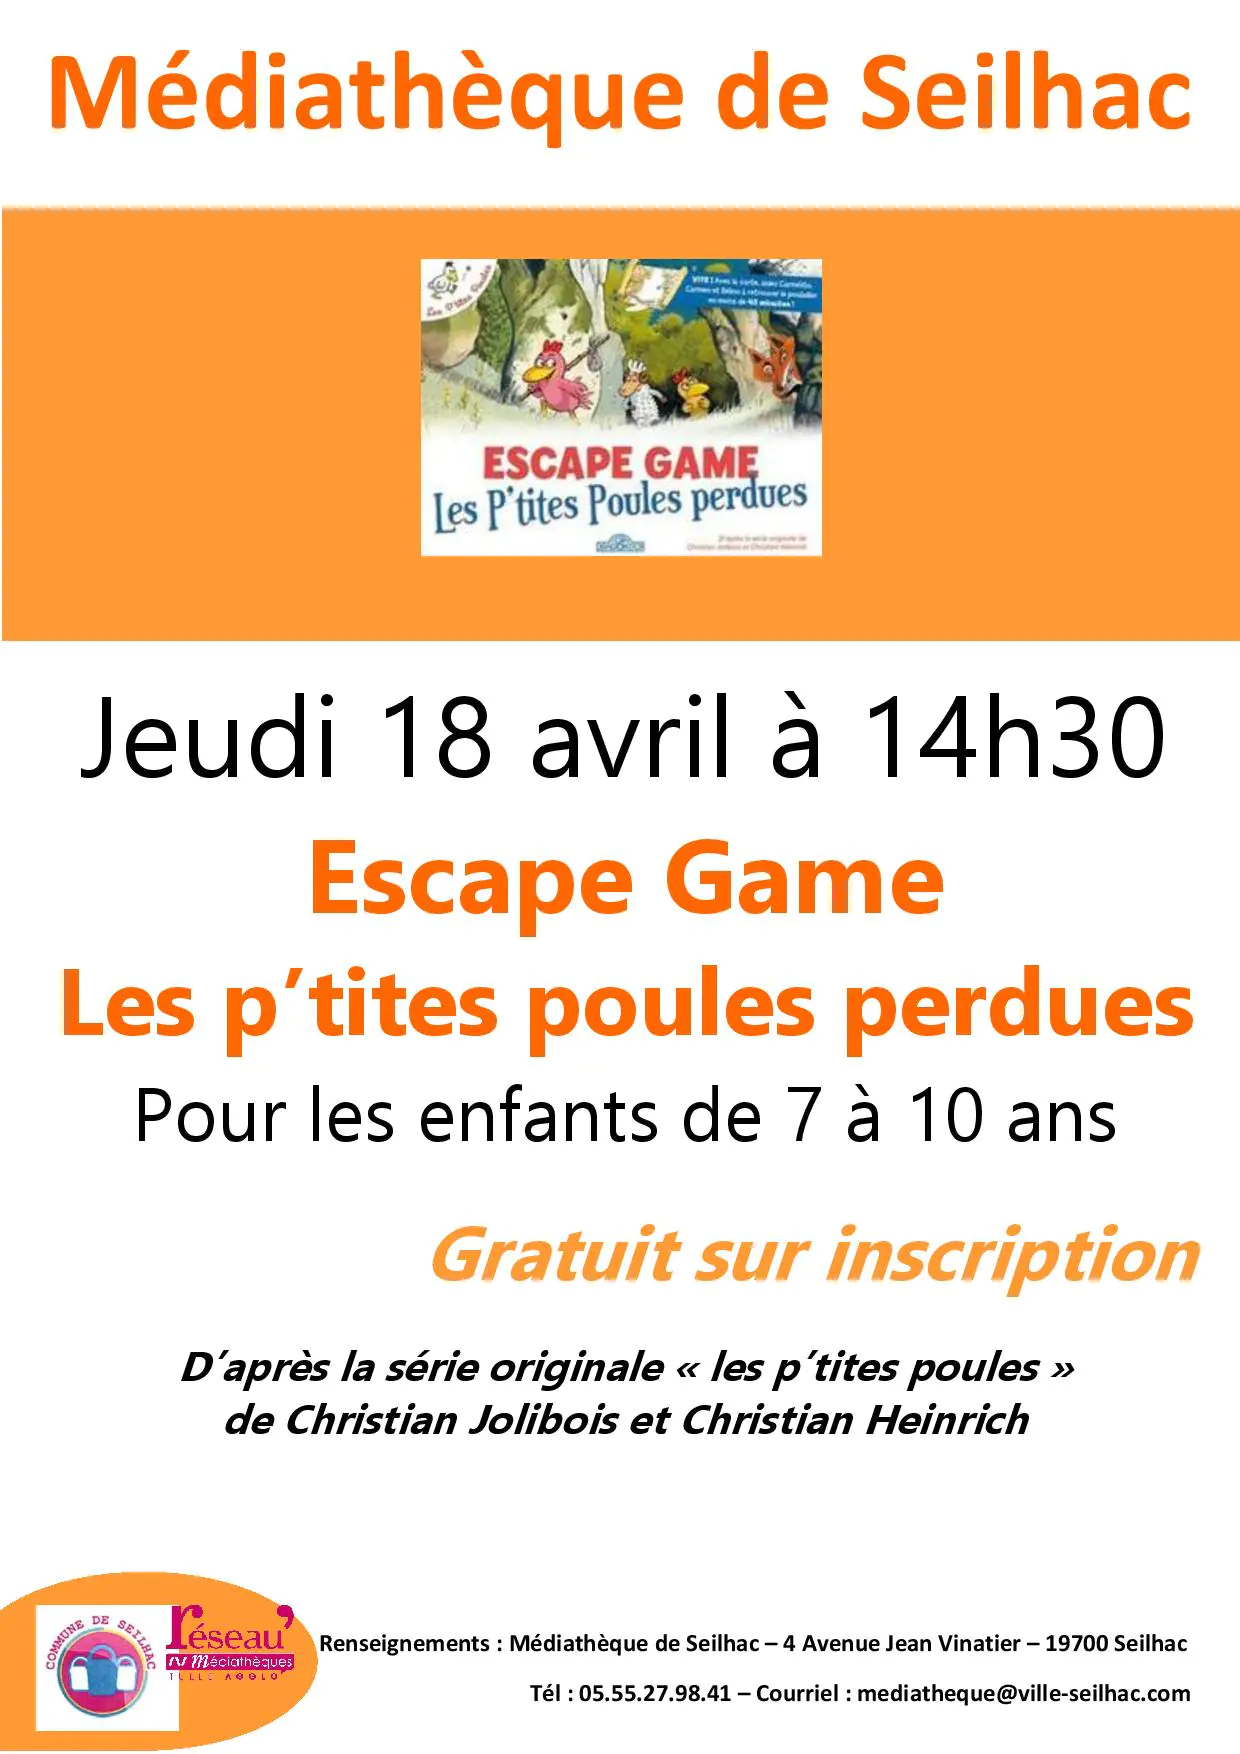 Escape Game "Les p'tites poules perdues"